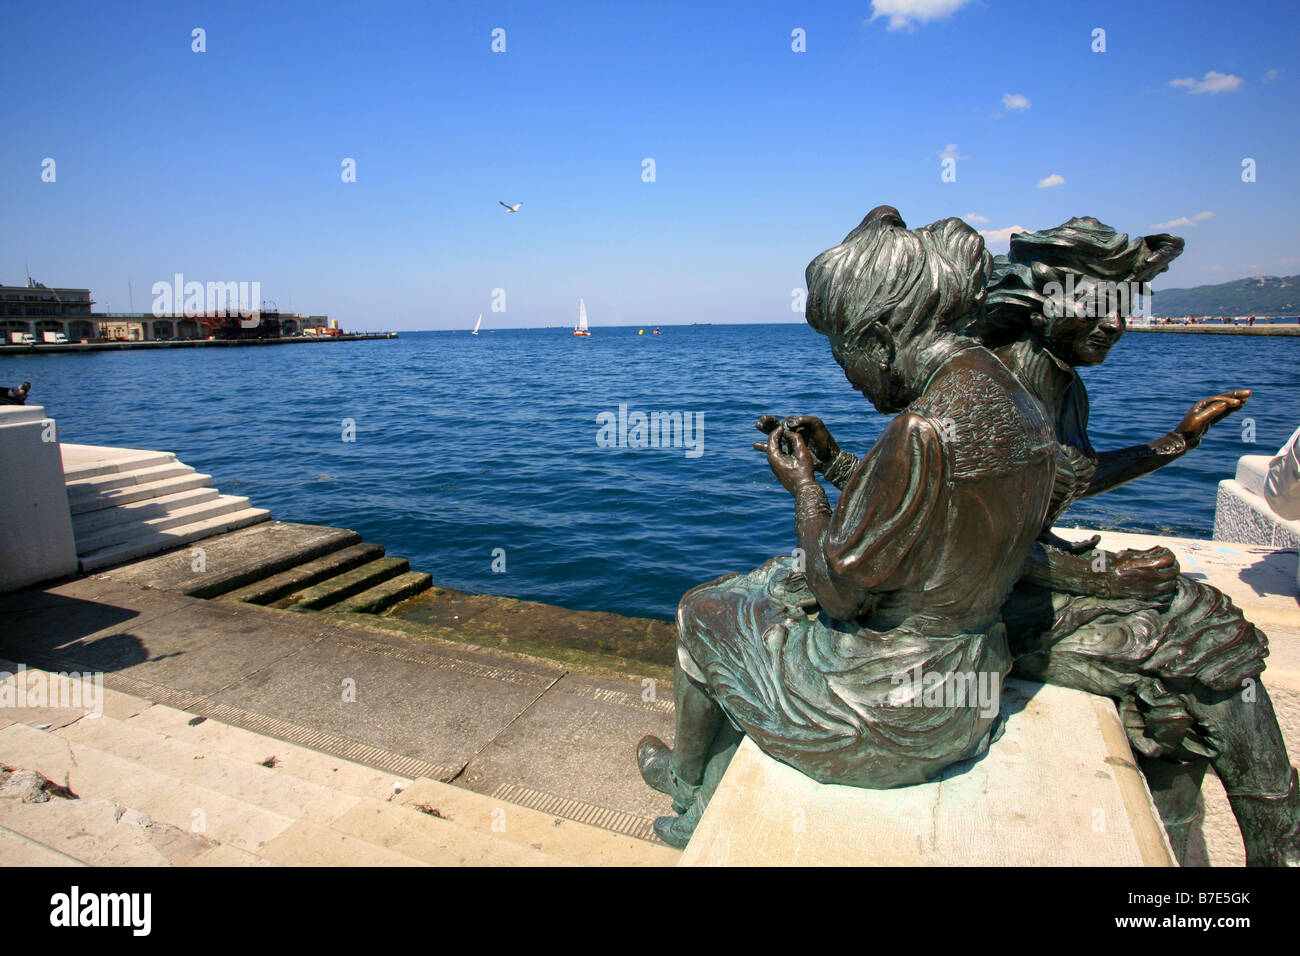 Bersagliere monument, Unitï¿½ d'Italia square, Trieste, Friuli Venezia Giulia, Italy Stock Photo